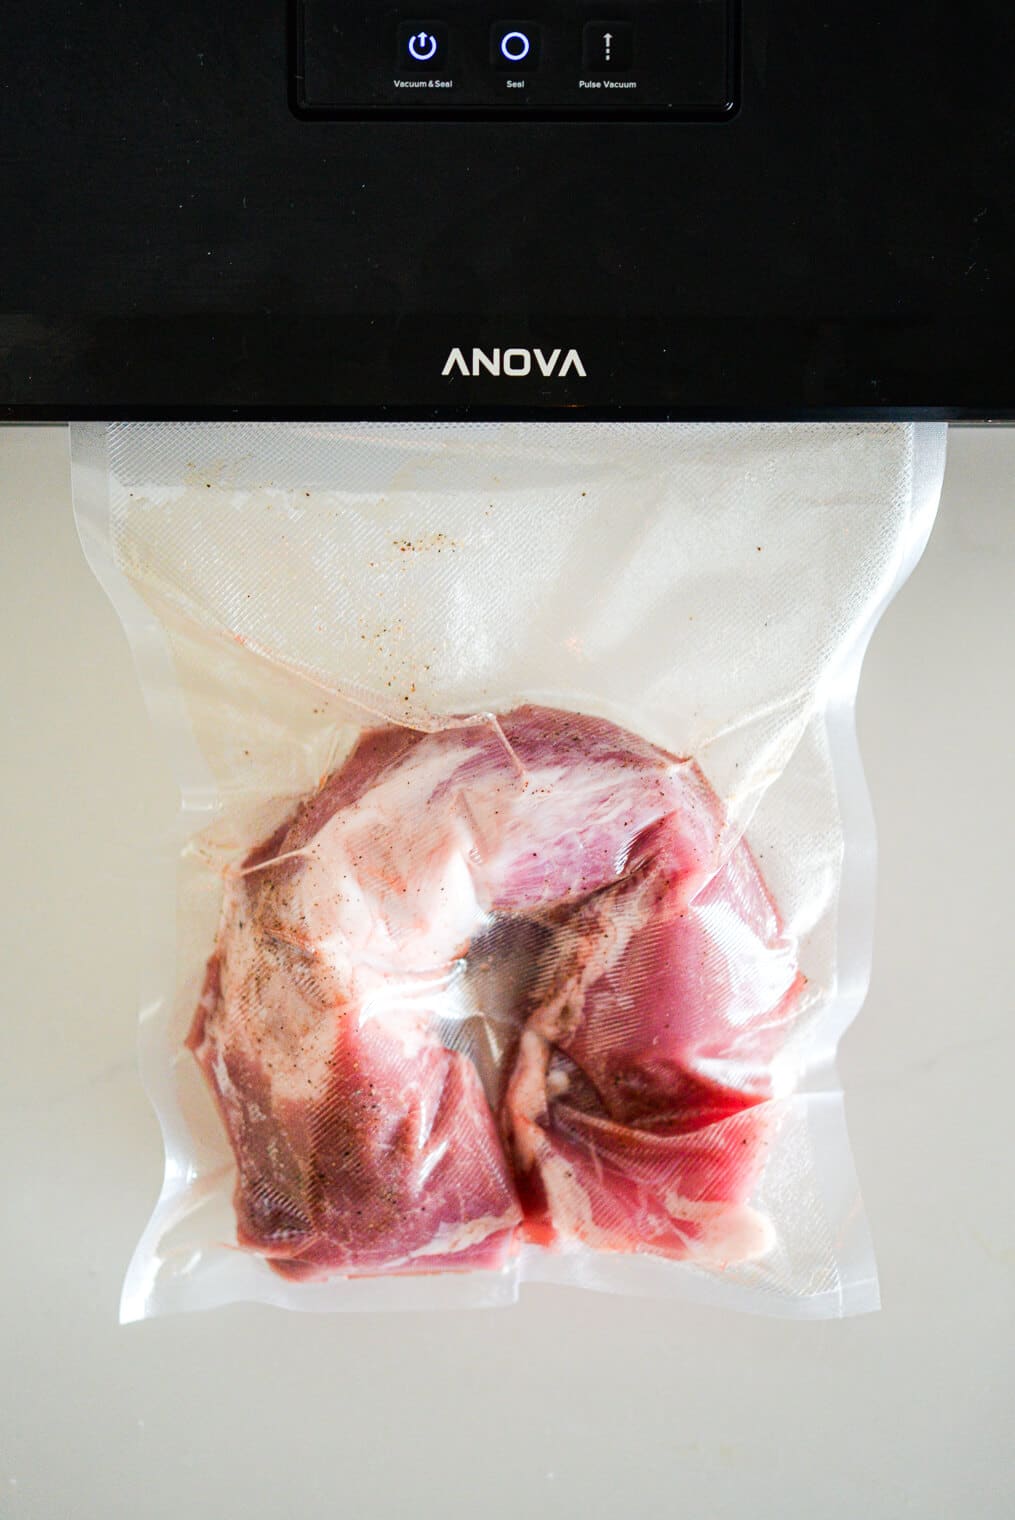 Raw pork tenderloin in vacuum sealed bag.